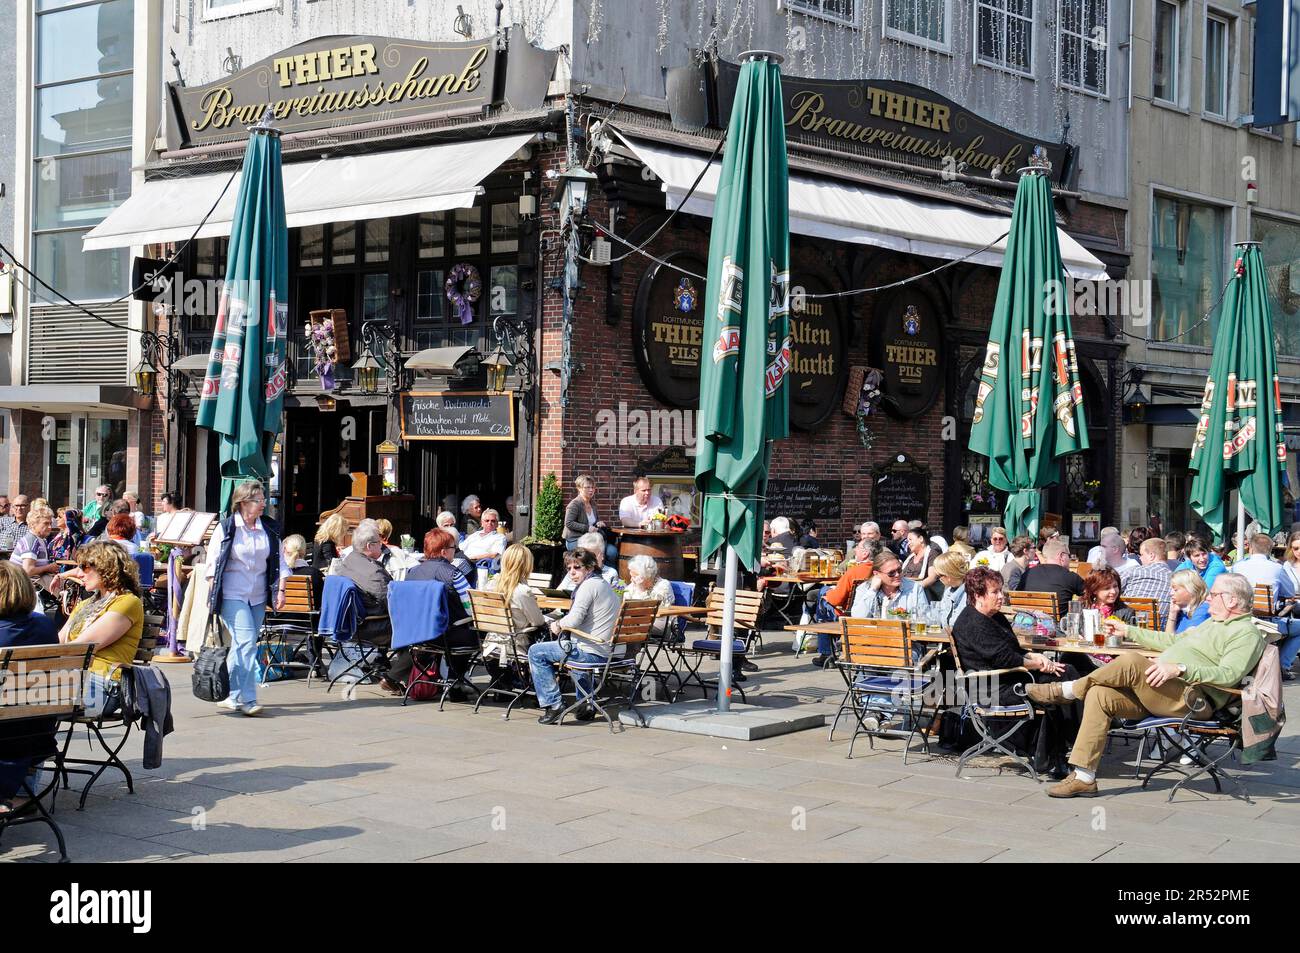 Alter Markt, Square, Street Cafe, Dortmund, Nordrhein-Westfalen, Deutschland, Thier Brauereiausschank Stockfoto